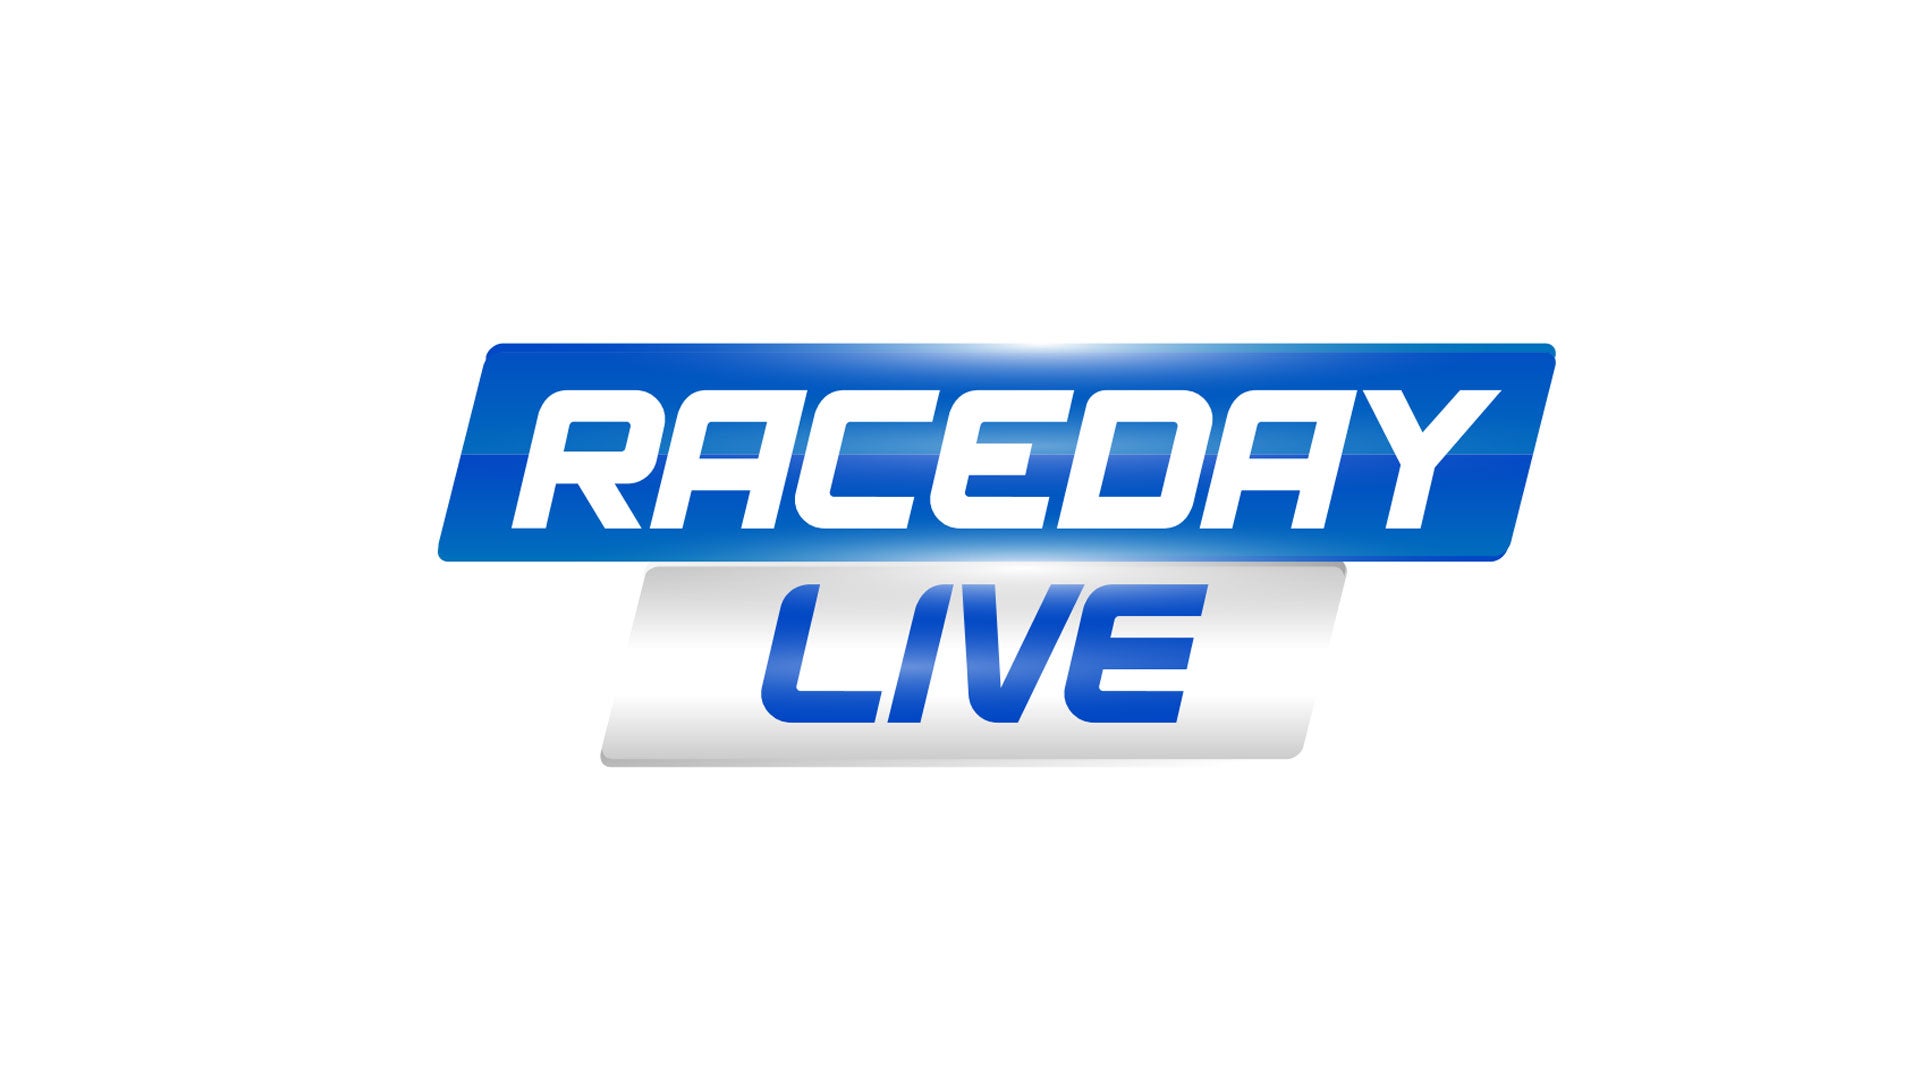 RaceDay Live show